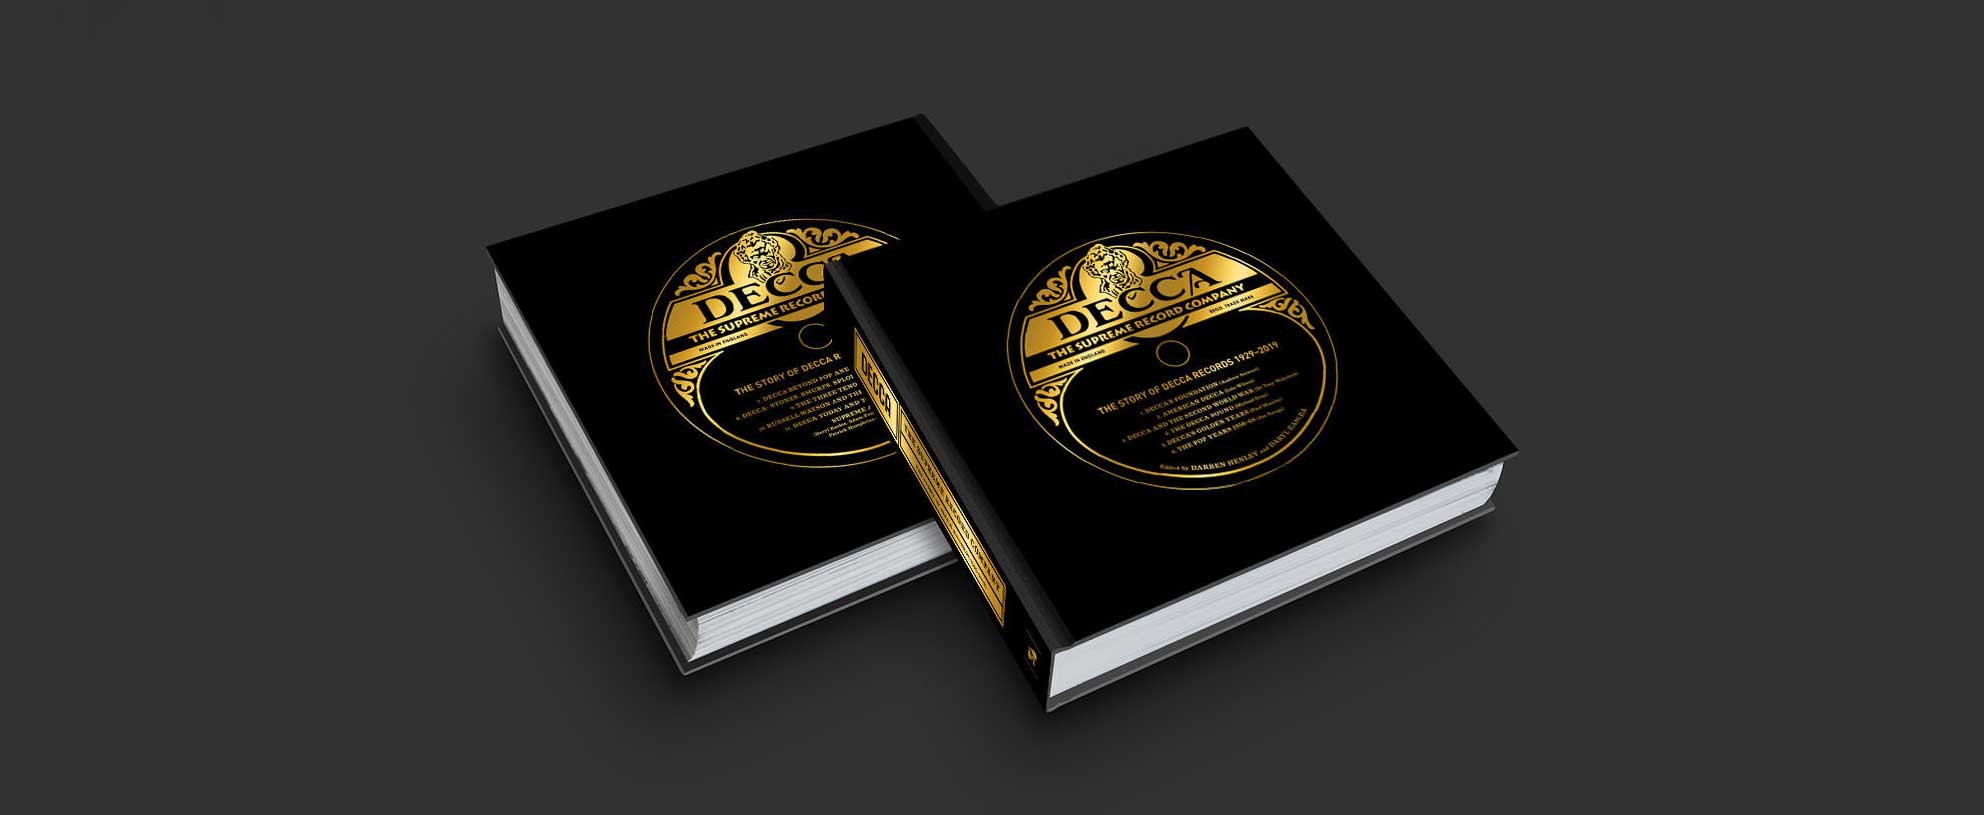 Decca - The Supreme Record Company